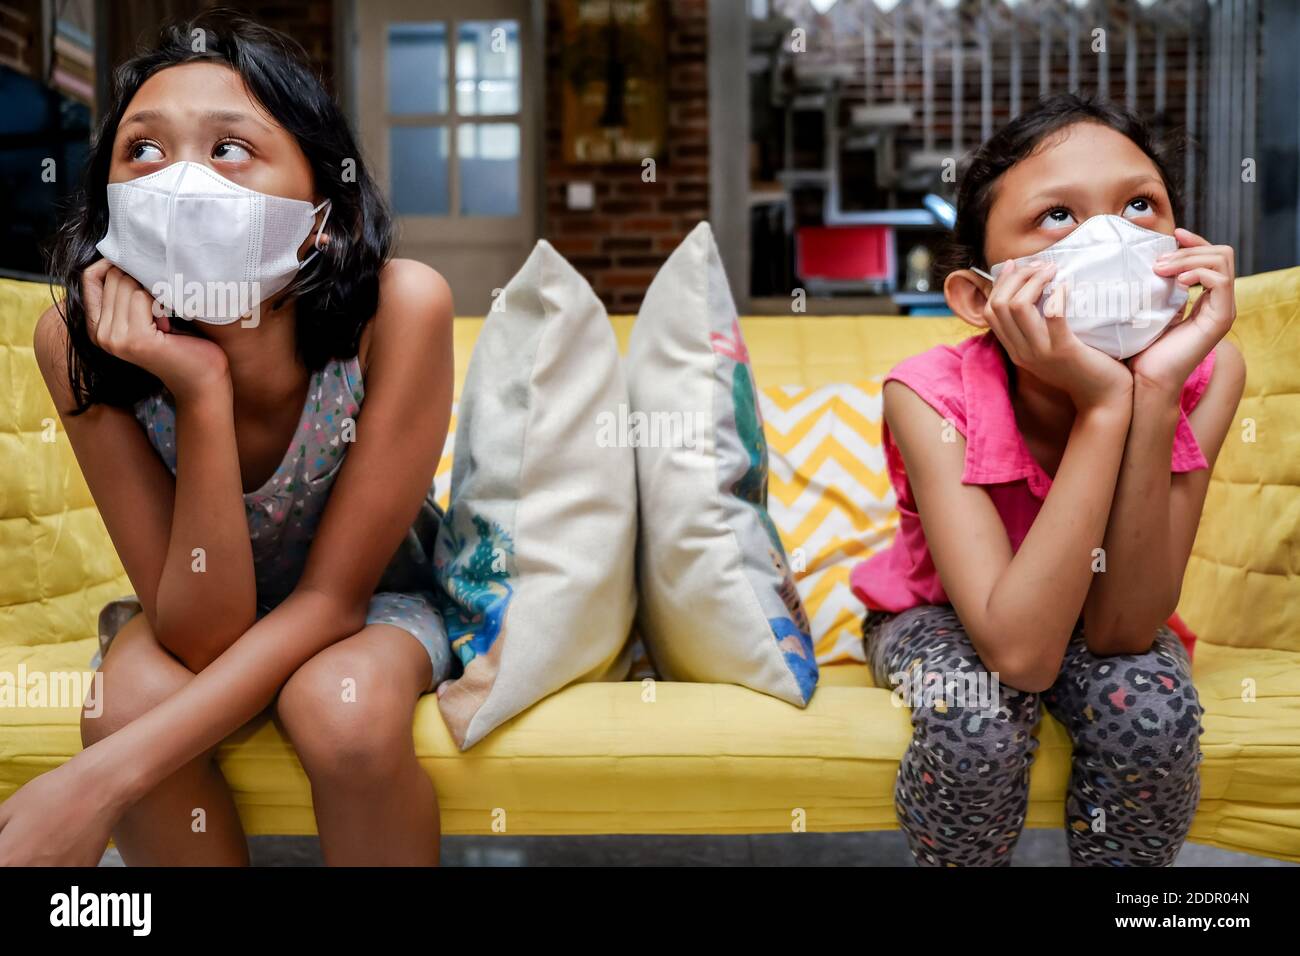 Deux petites filles d'Asie du Sud-est portant un masque médical pour le visage obtenir S'ennuient assis sur un canapé à part l'un de l'autre à la maison Pendant une pandémie Banque D'Images